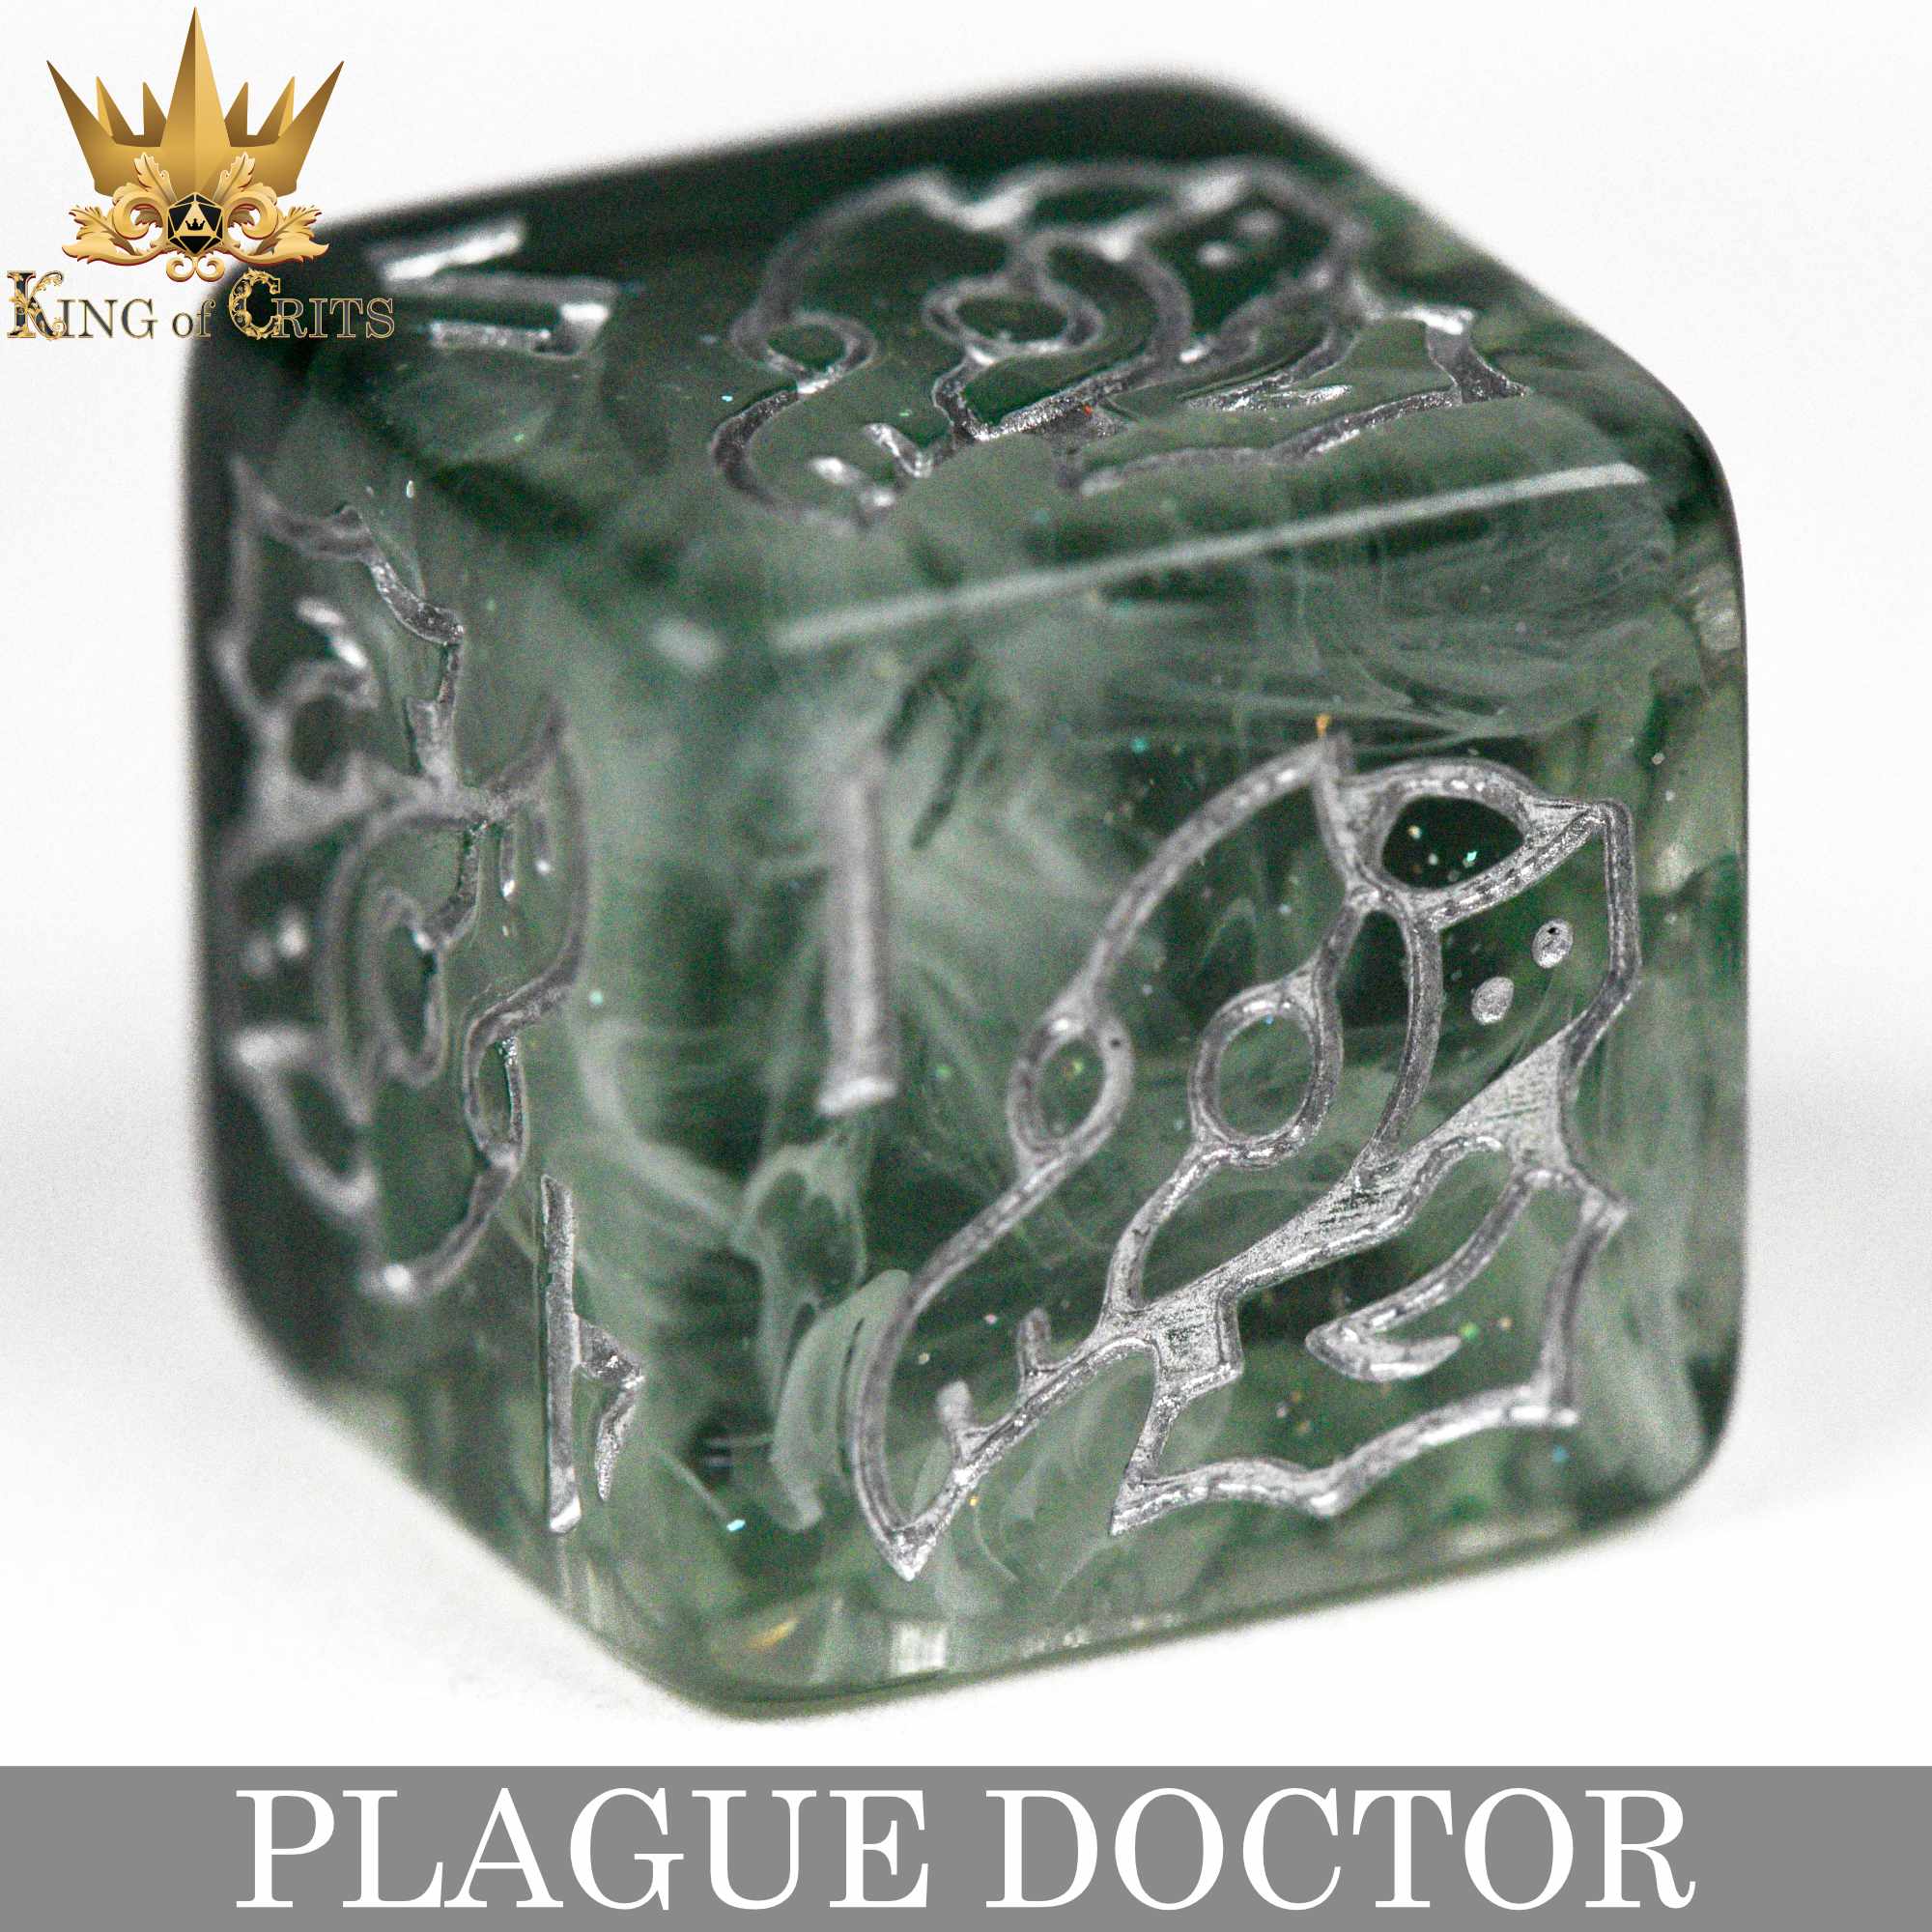 Plague Doctor 11 Dice Set